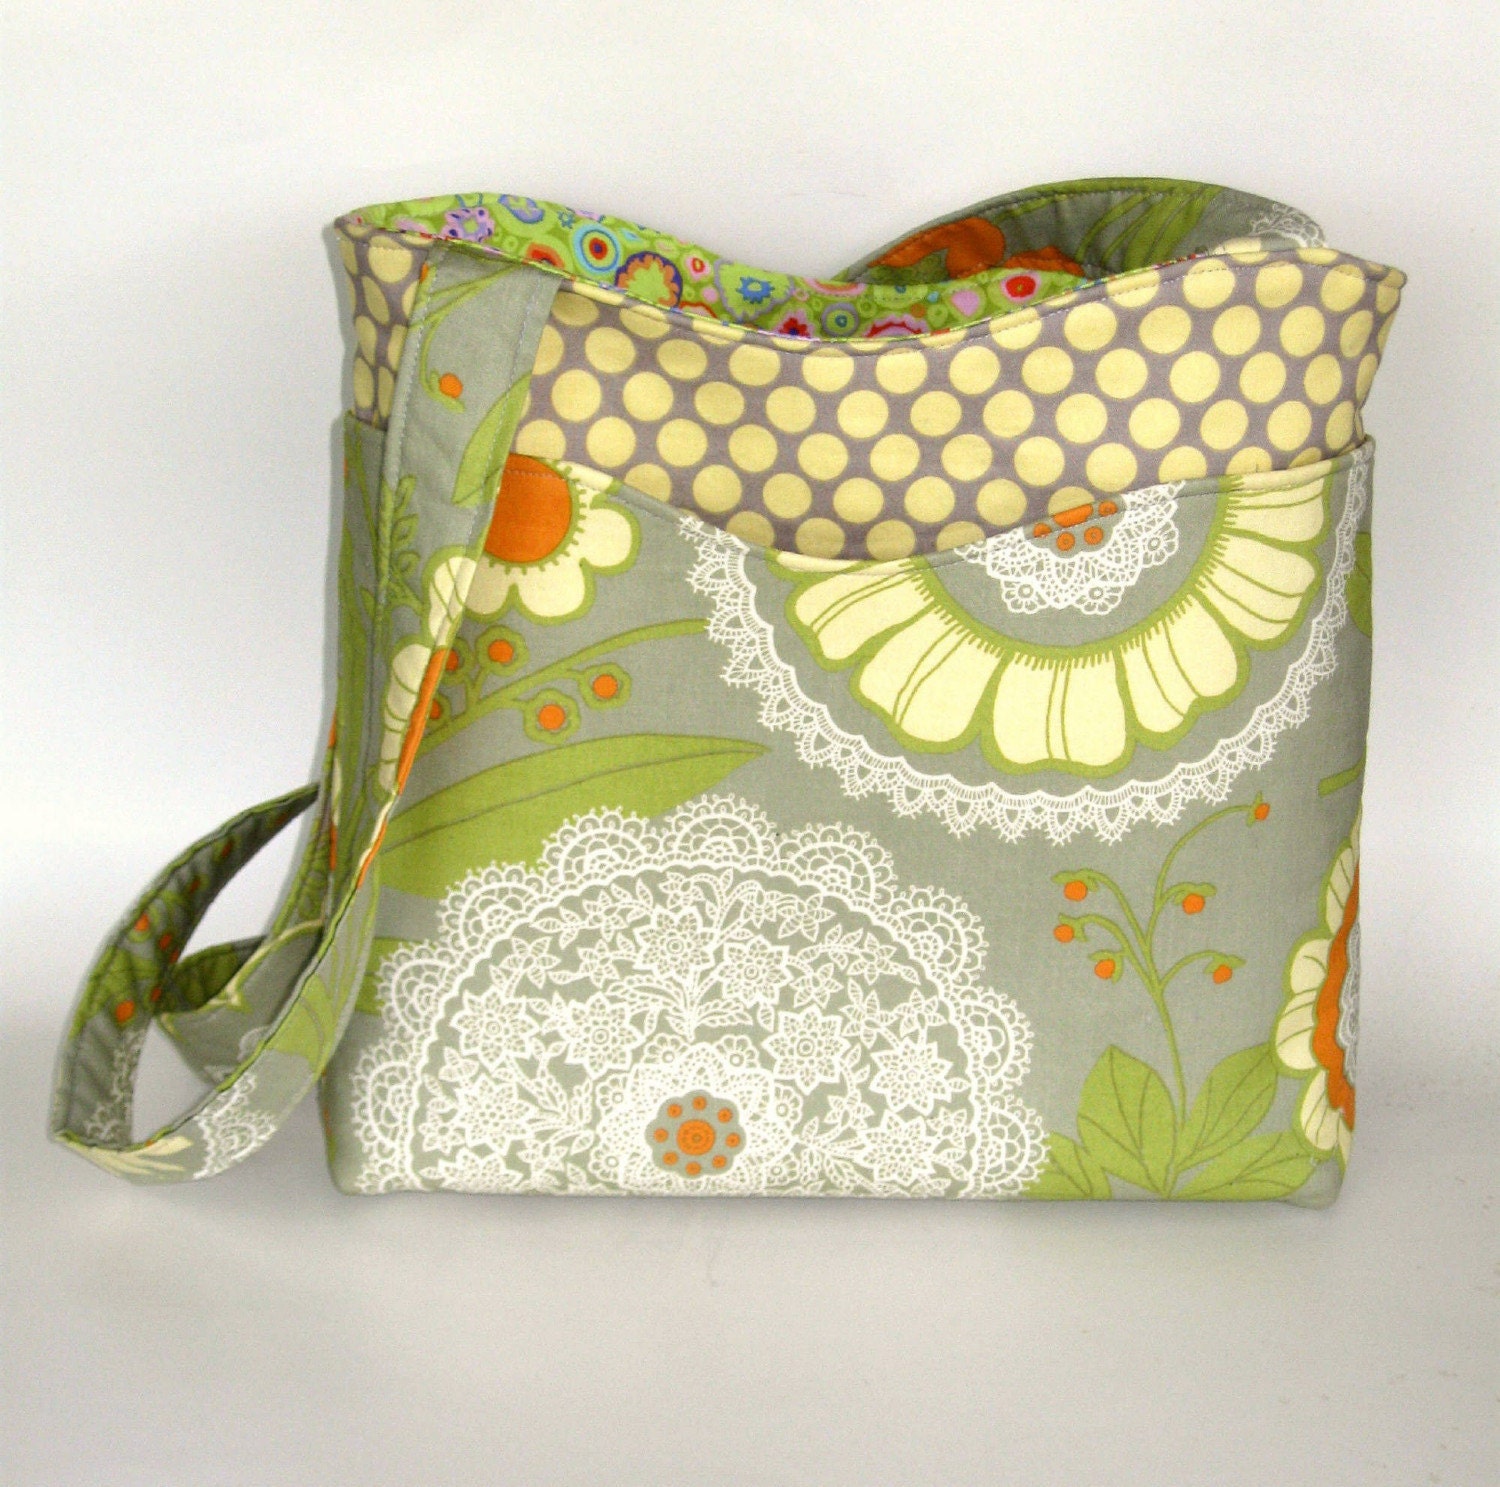 Classic Amy Butler. Handmade shoulder purse. Amy Butler, Kaffe Fassett fabrics. Pockets.